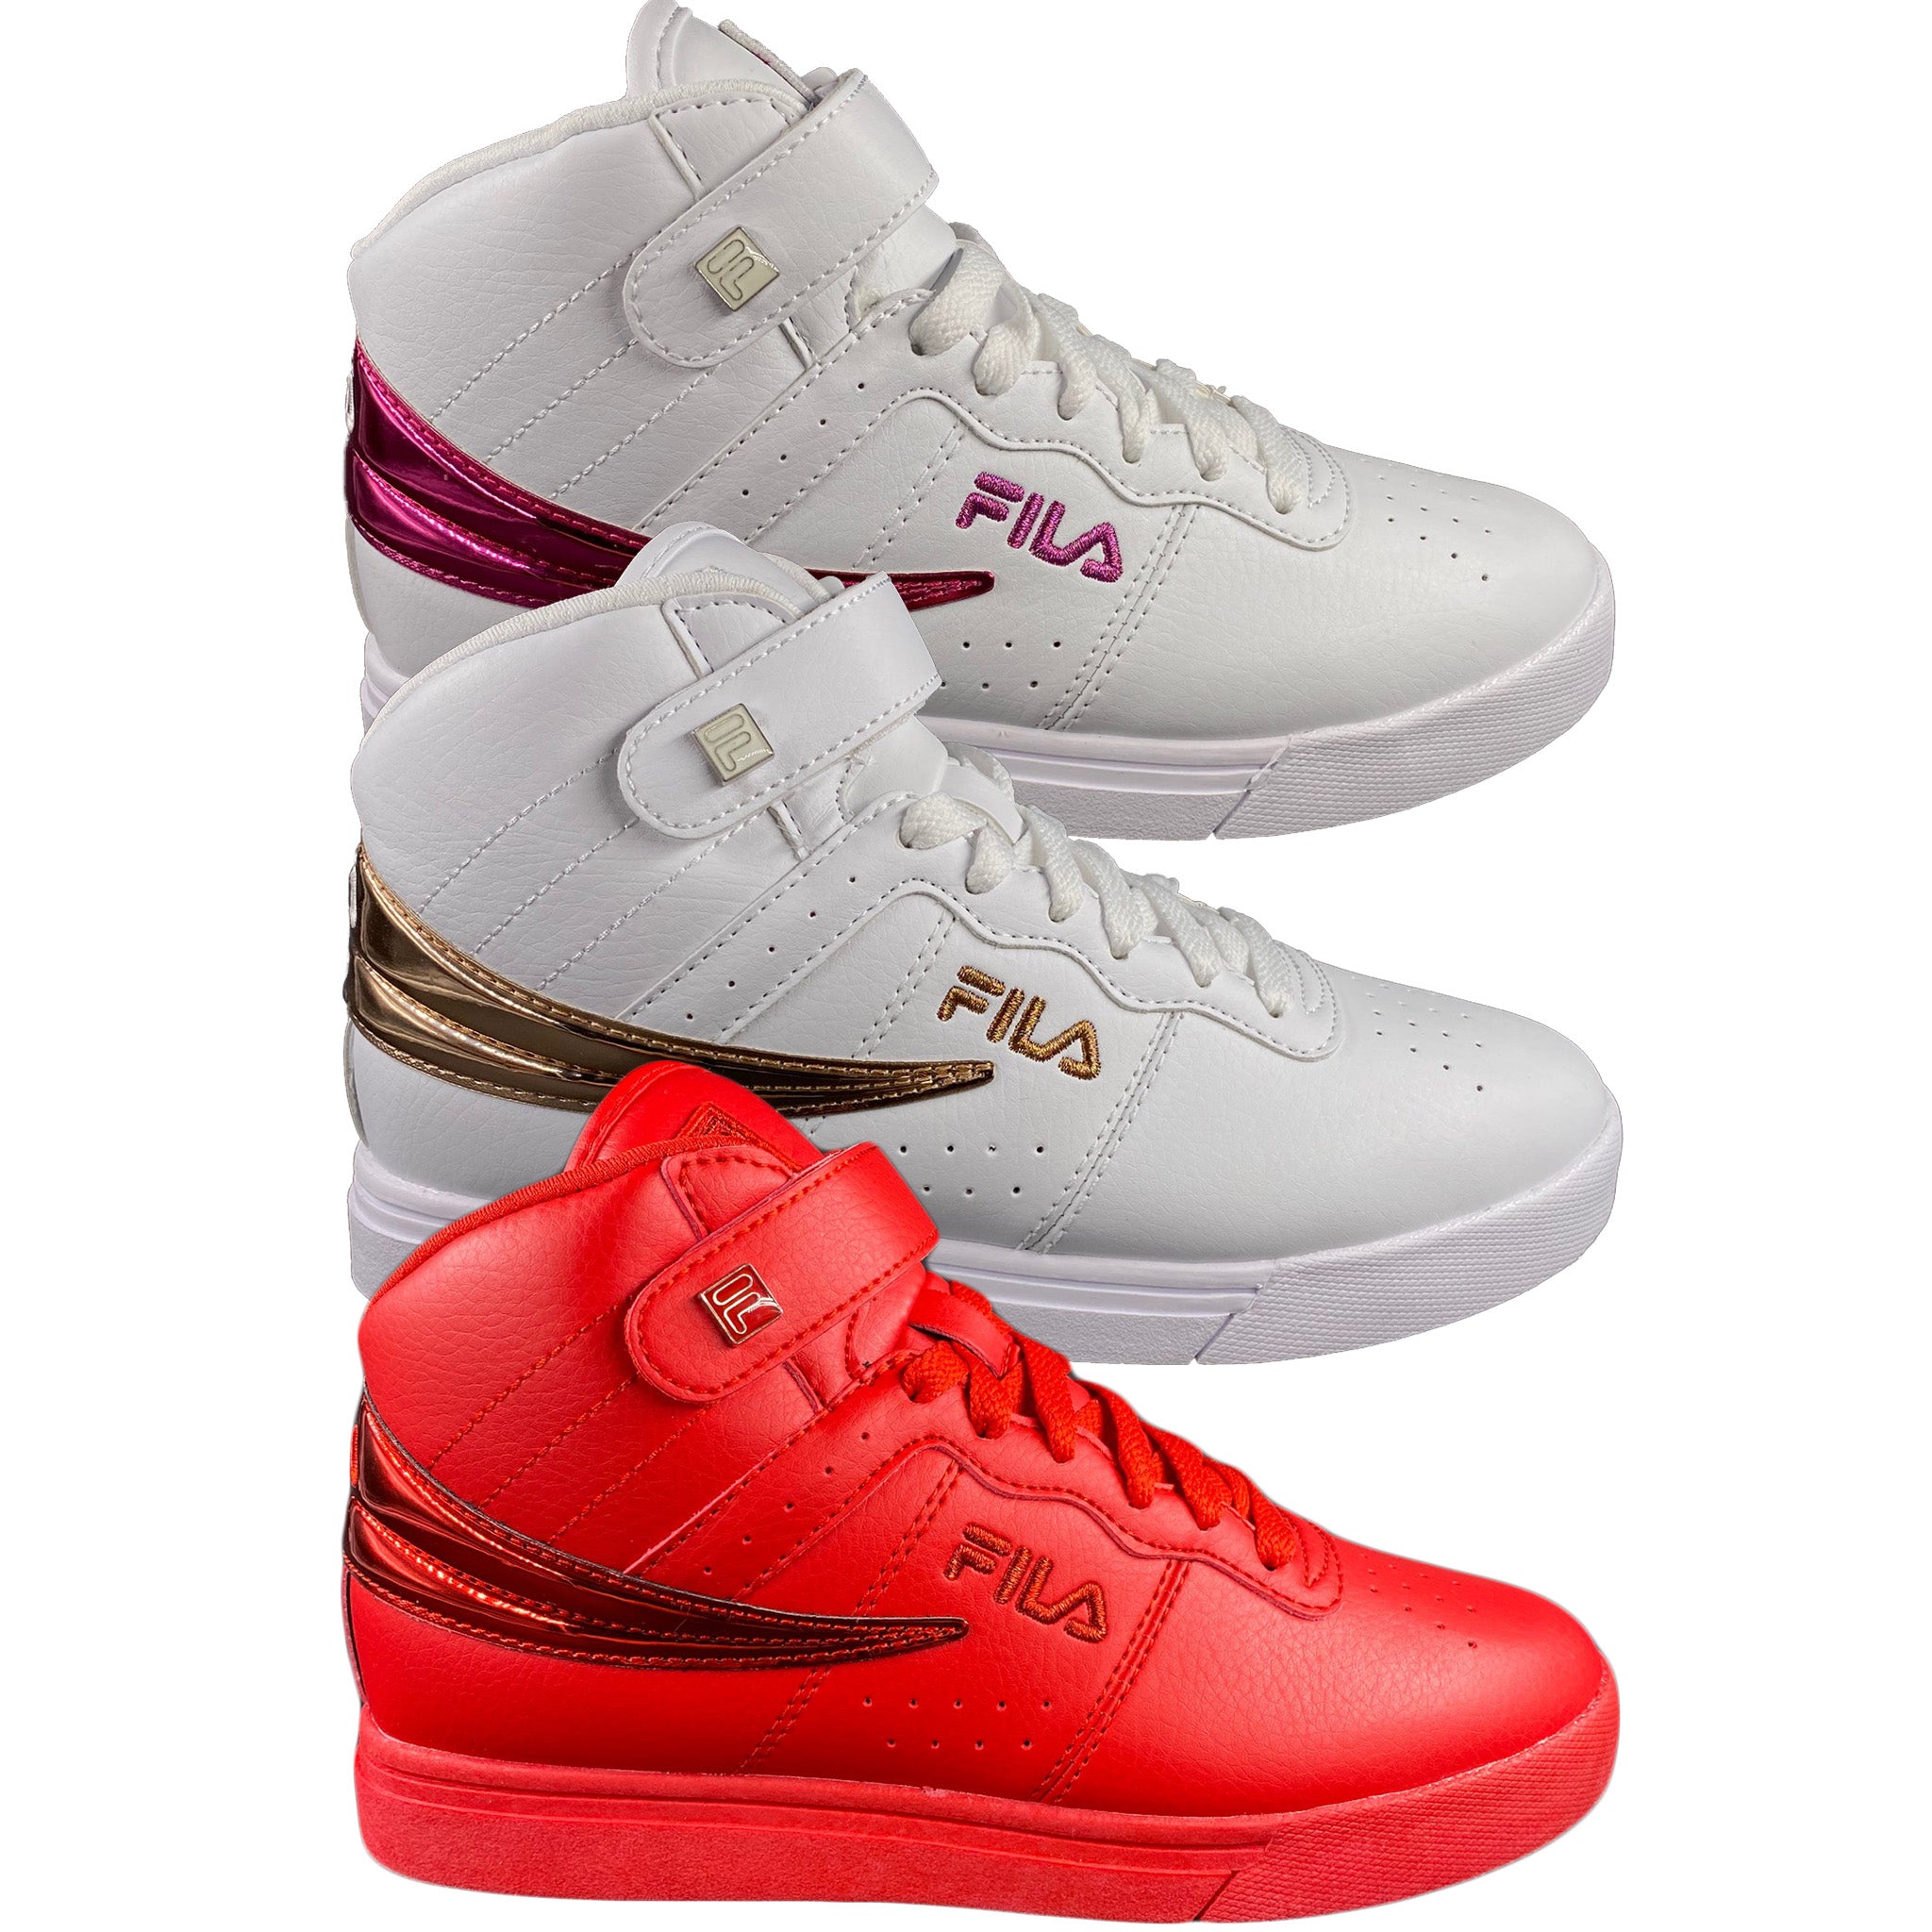 Fila Women's Fashion Sneaker, Casual Shoes Size 8.0 M White/Pink 28233 |  eBay